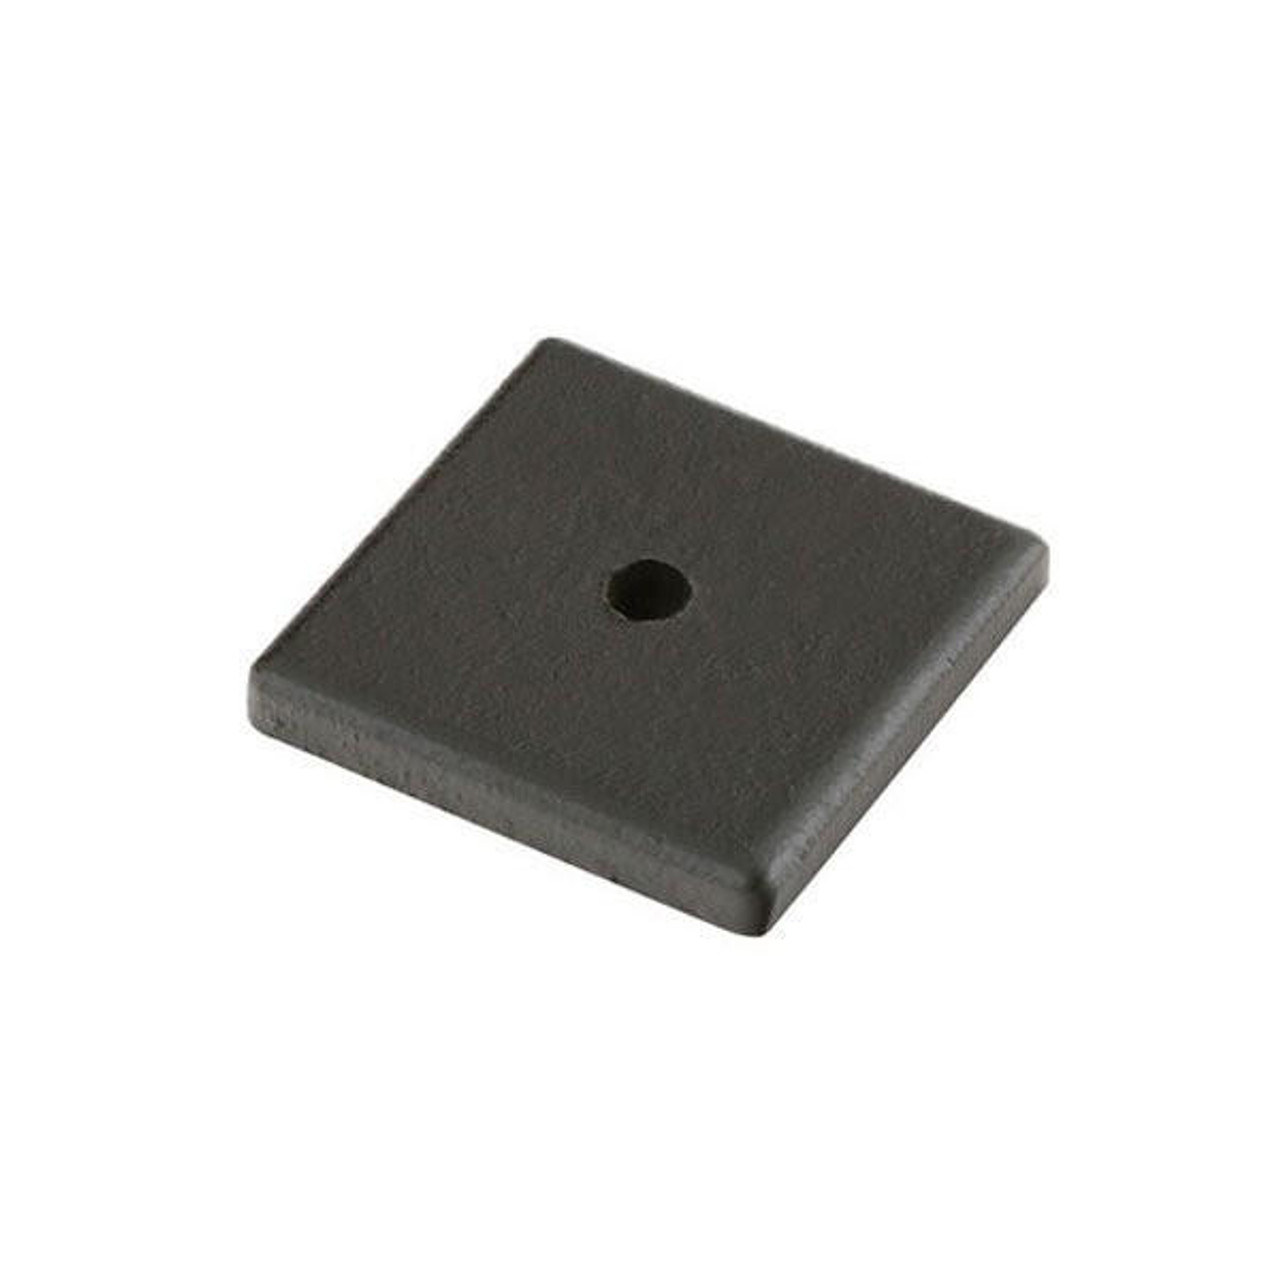  EMTEK Sandcast Bronze 1-1/4" Square Backplate 